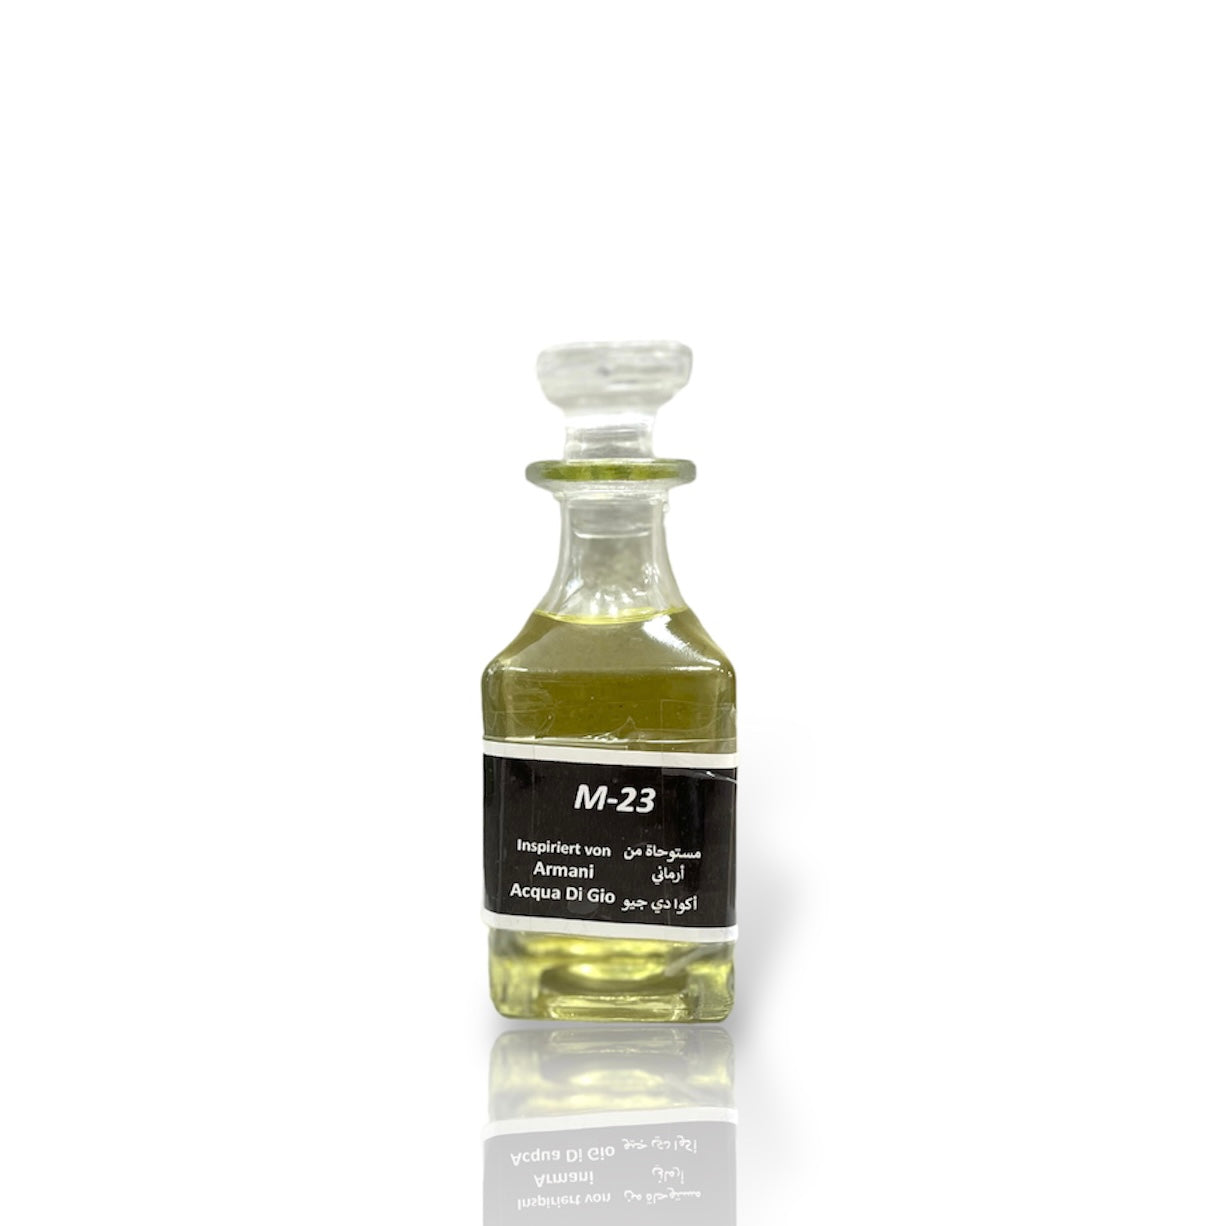 M-23 Oil Perfume *Inspired By Armani Acqua Di Gio